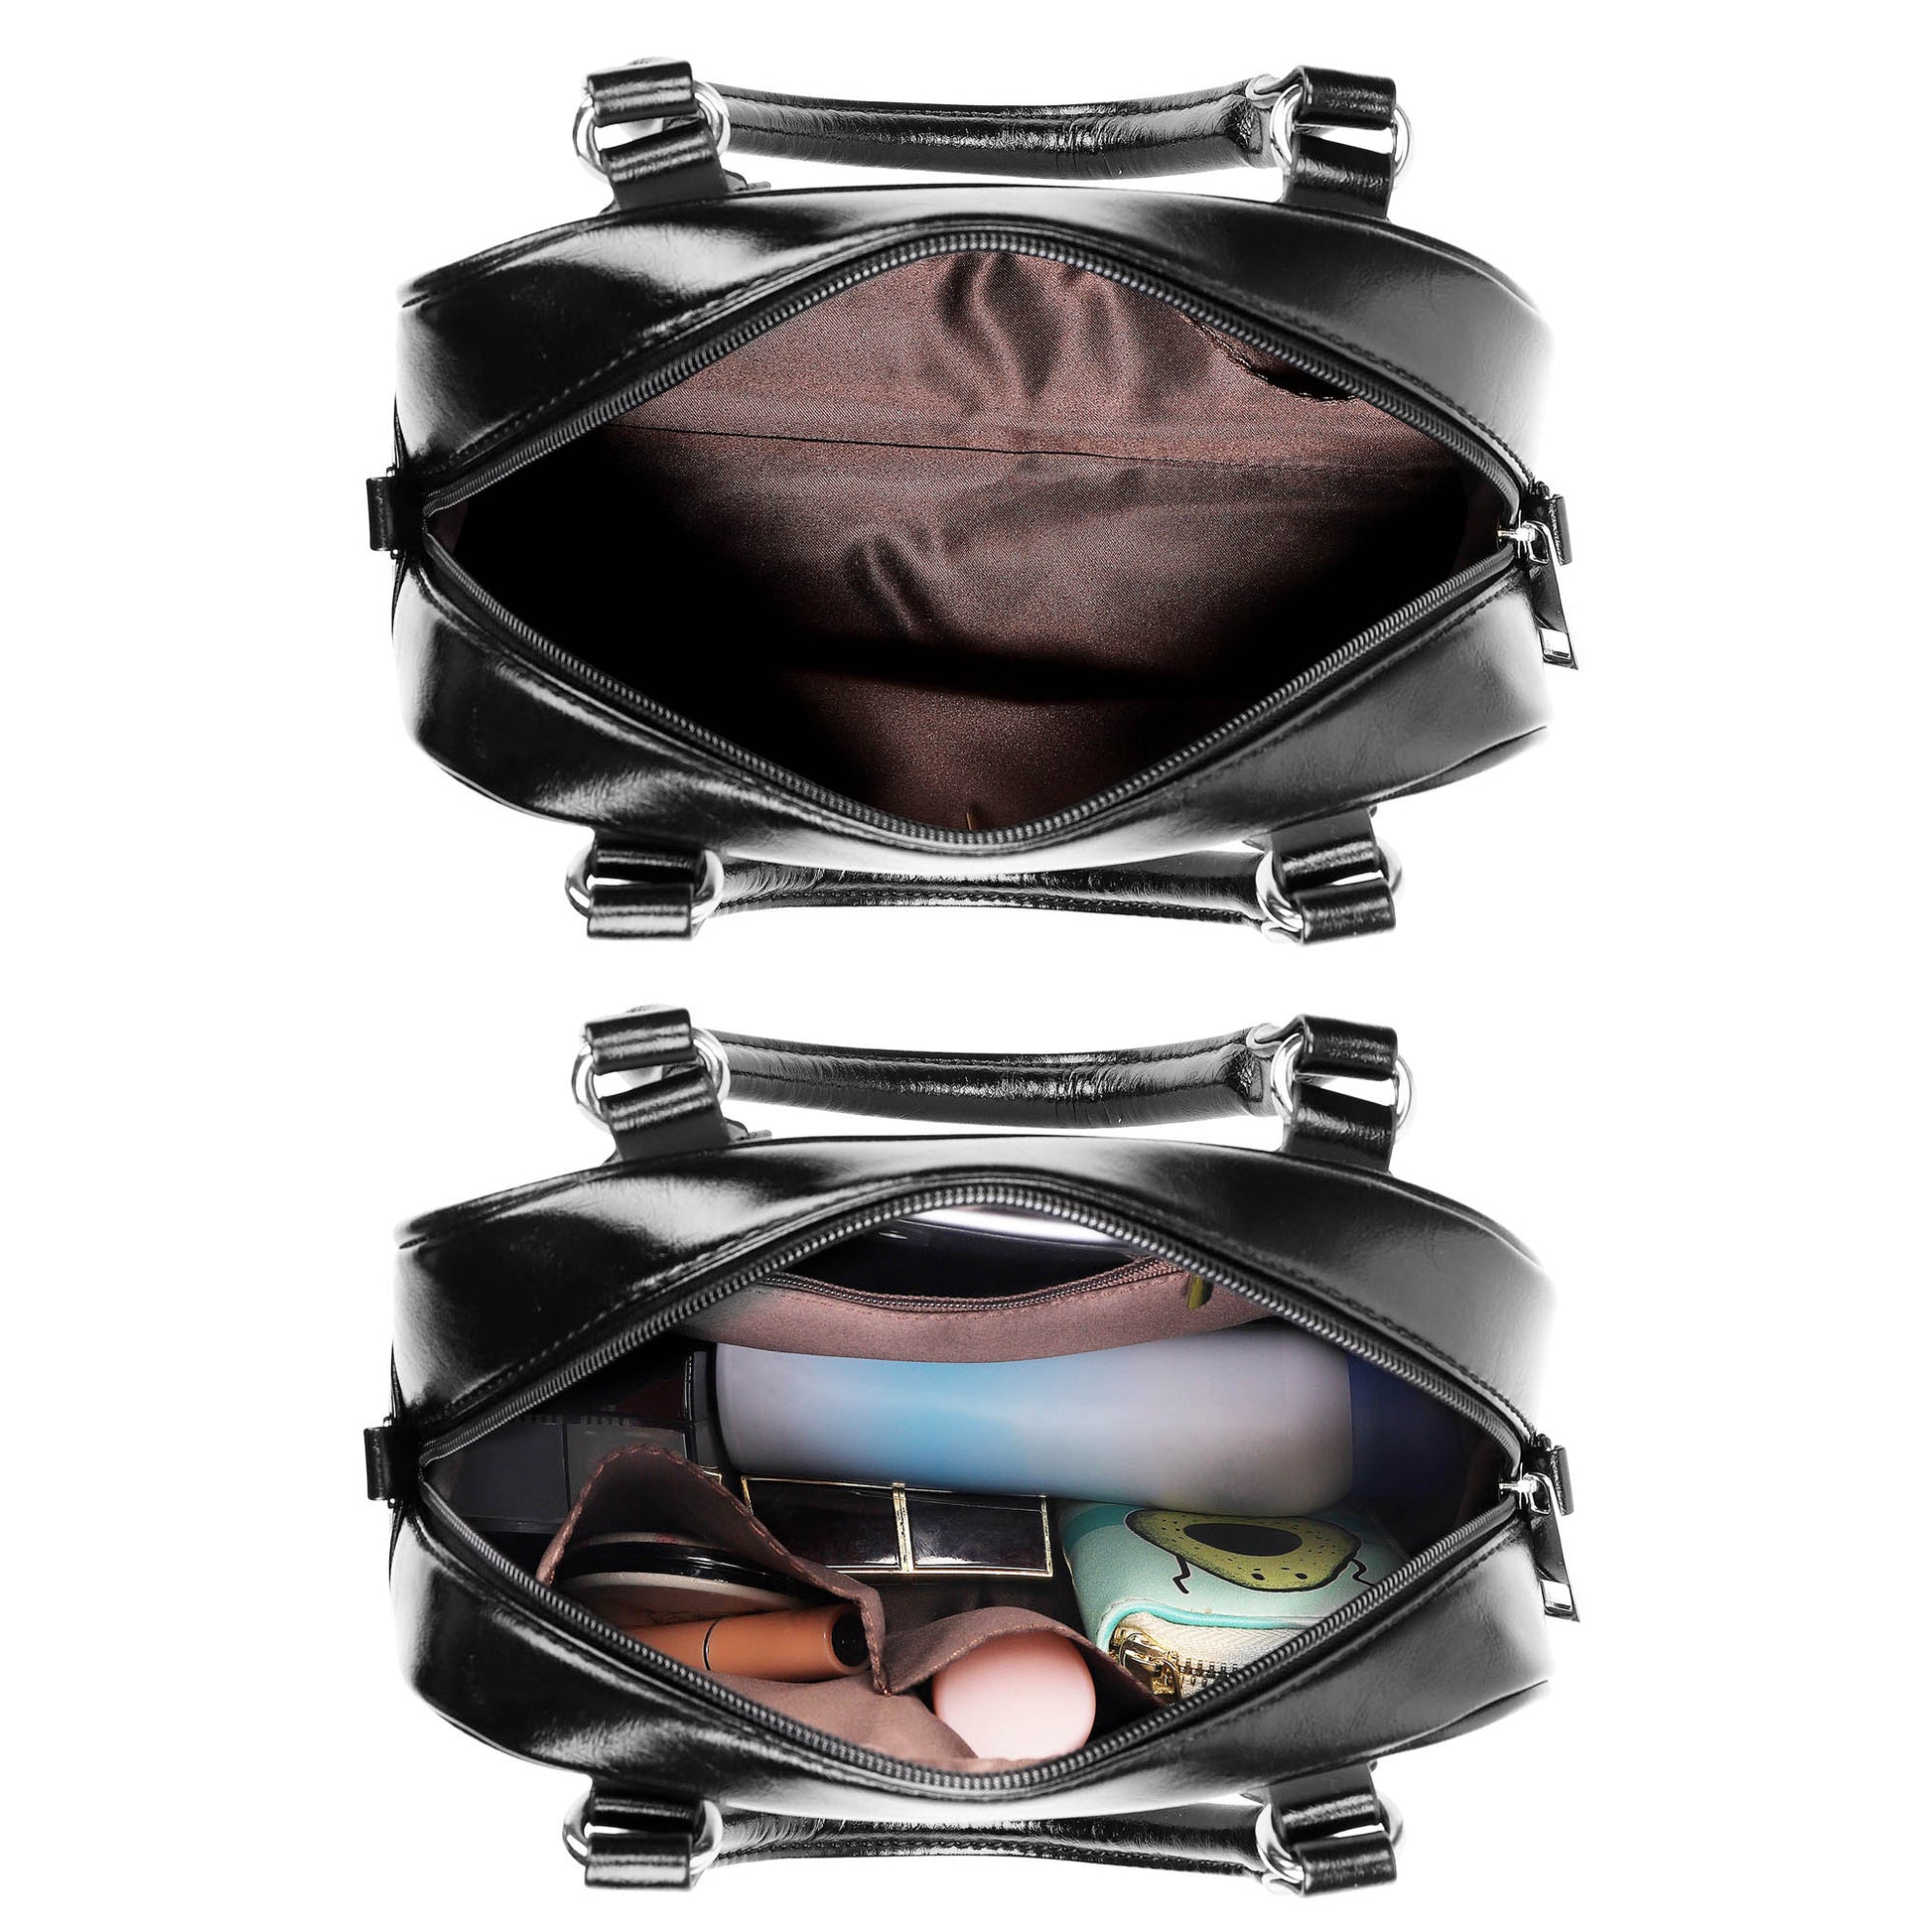 Forbes Dress Tartan Shoulder Handbags - Tartanvibesclothing